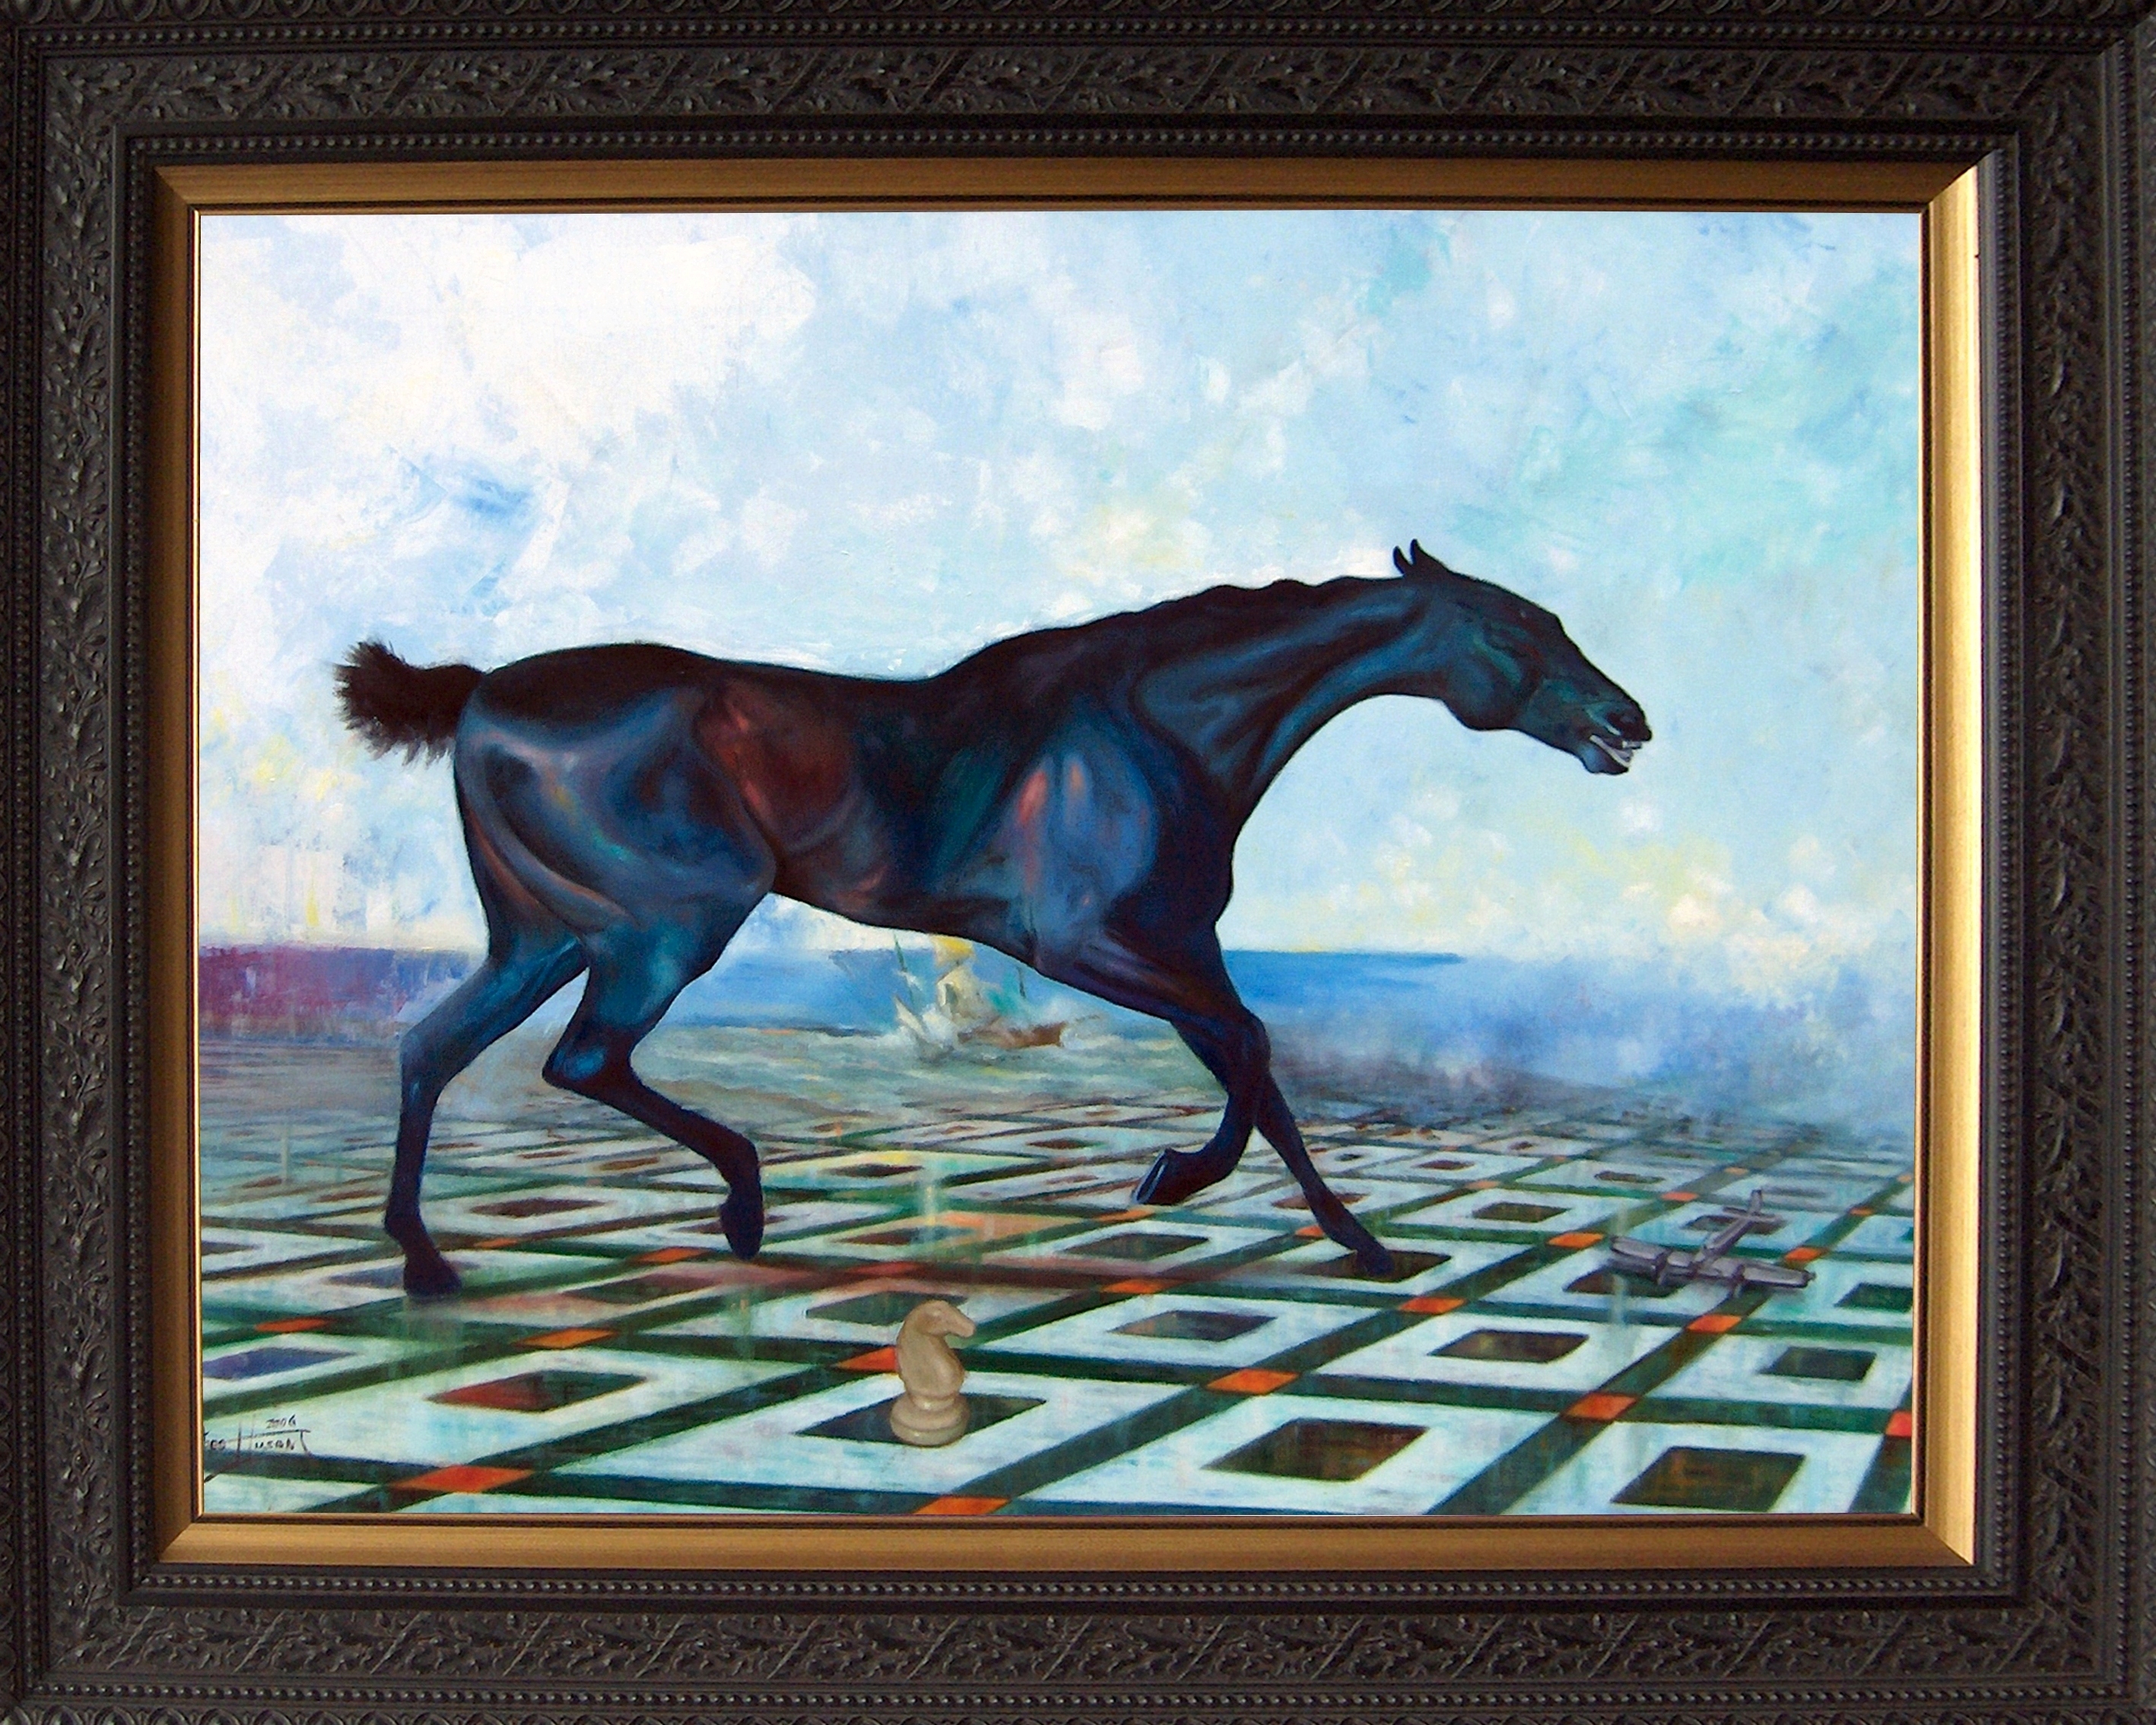 Kunstwerk gemaakt door Theo getiteld Paard met schaakspel